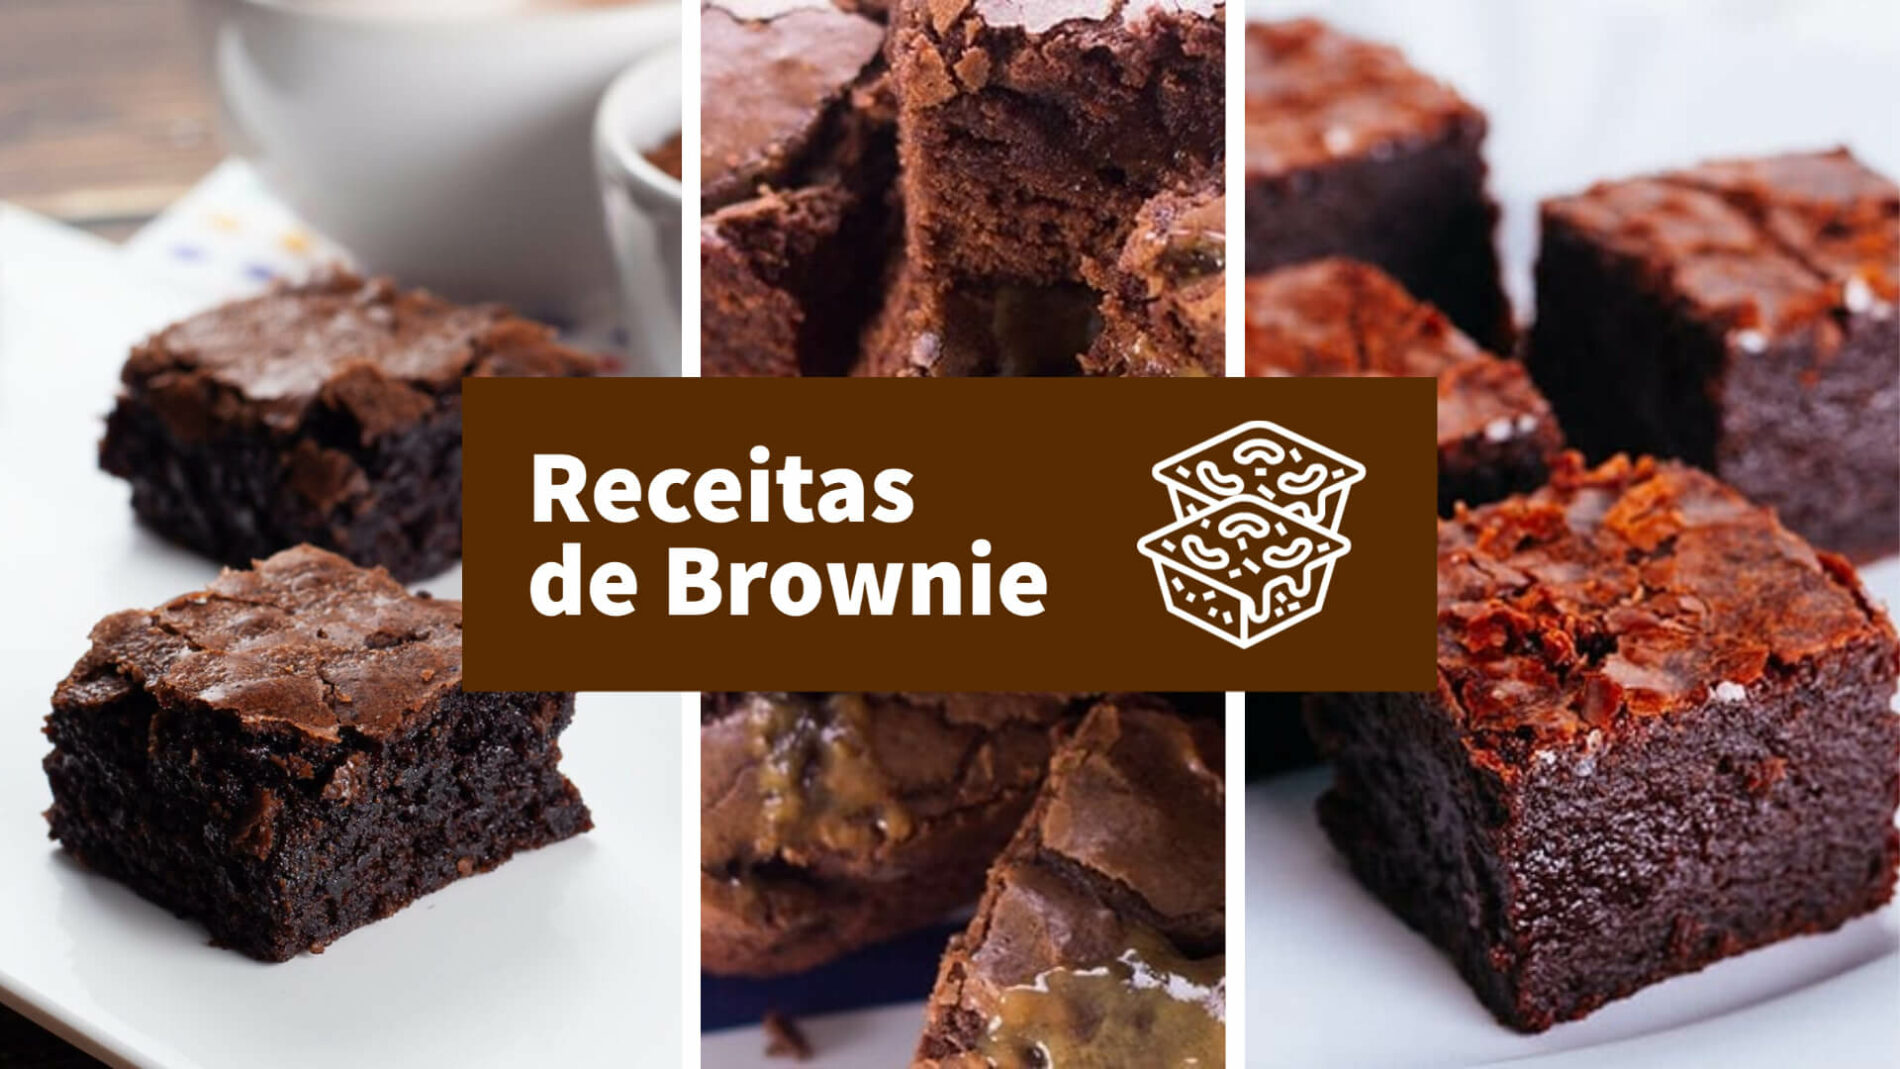 Receitas de brownie - naminhapanela.com